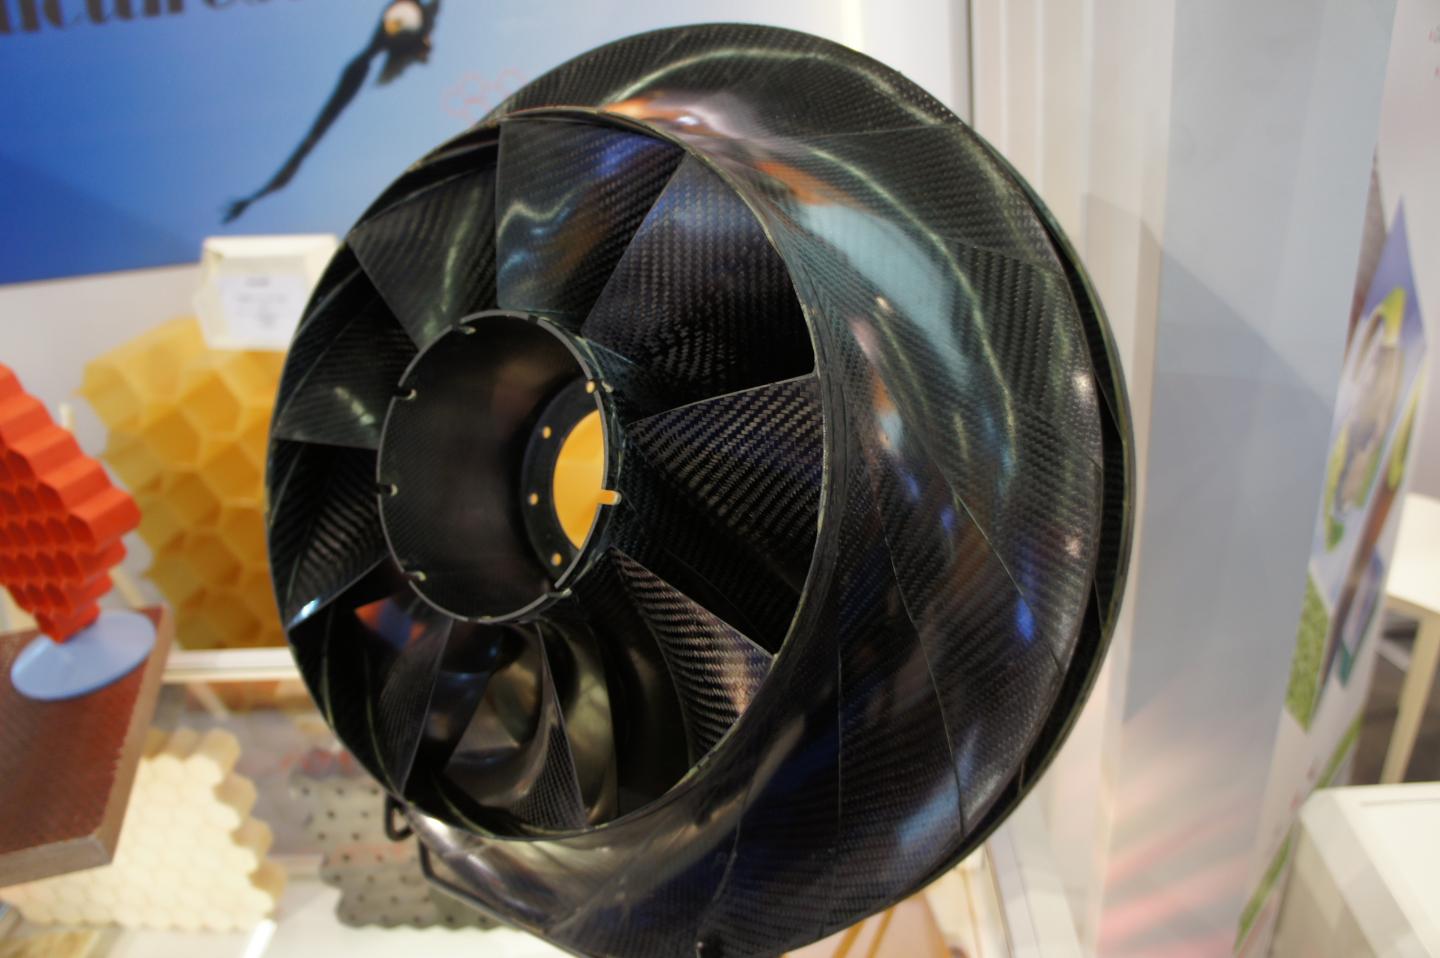 Engine Fan